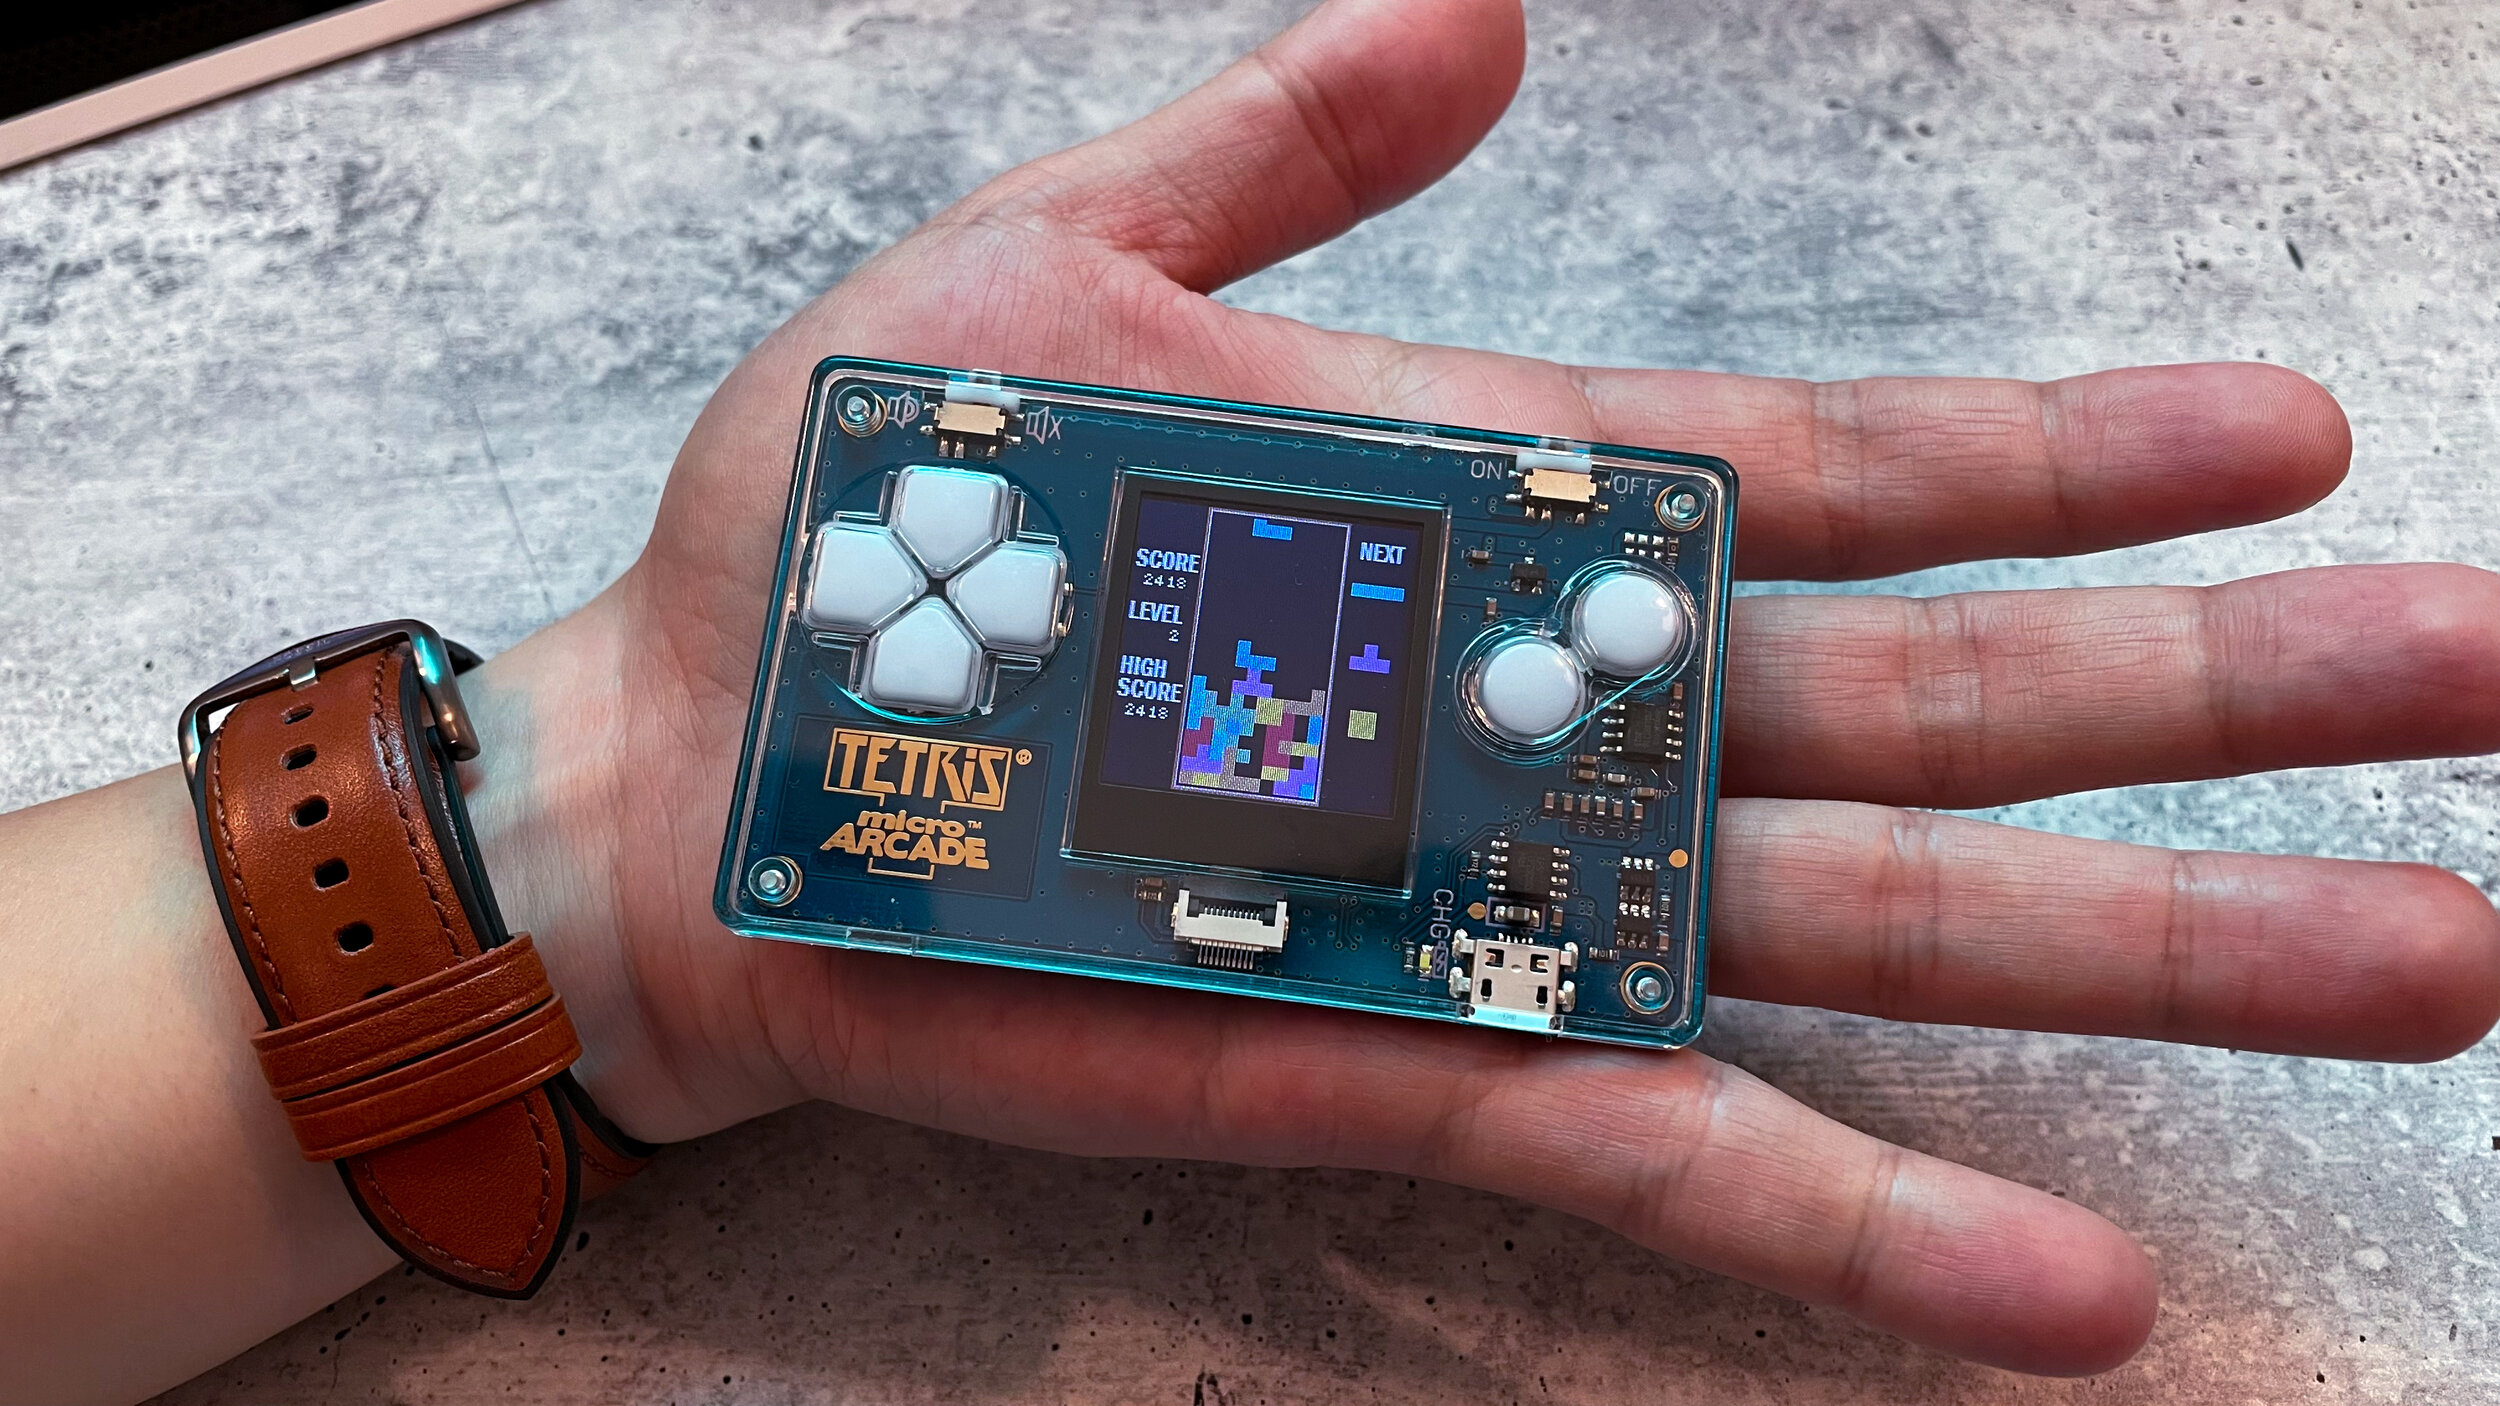 Tetris Mini Arcade in Palm.jpg